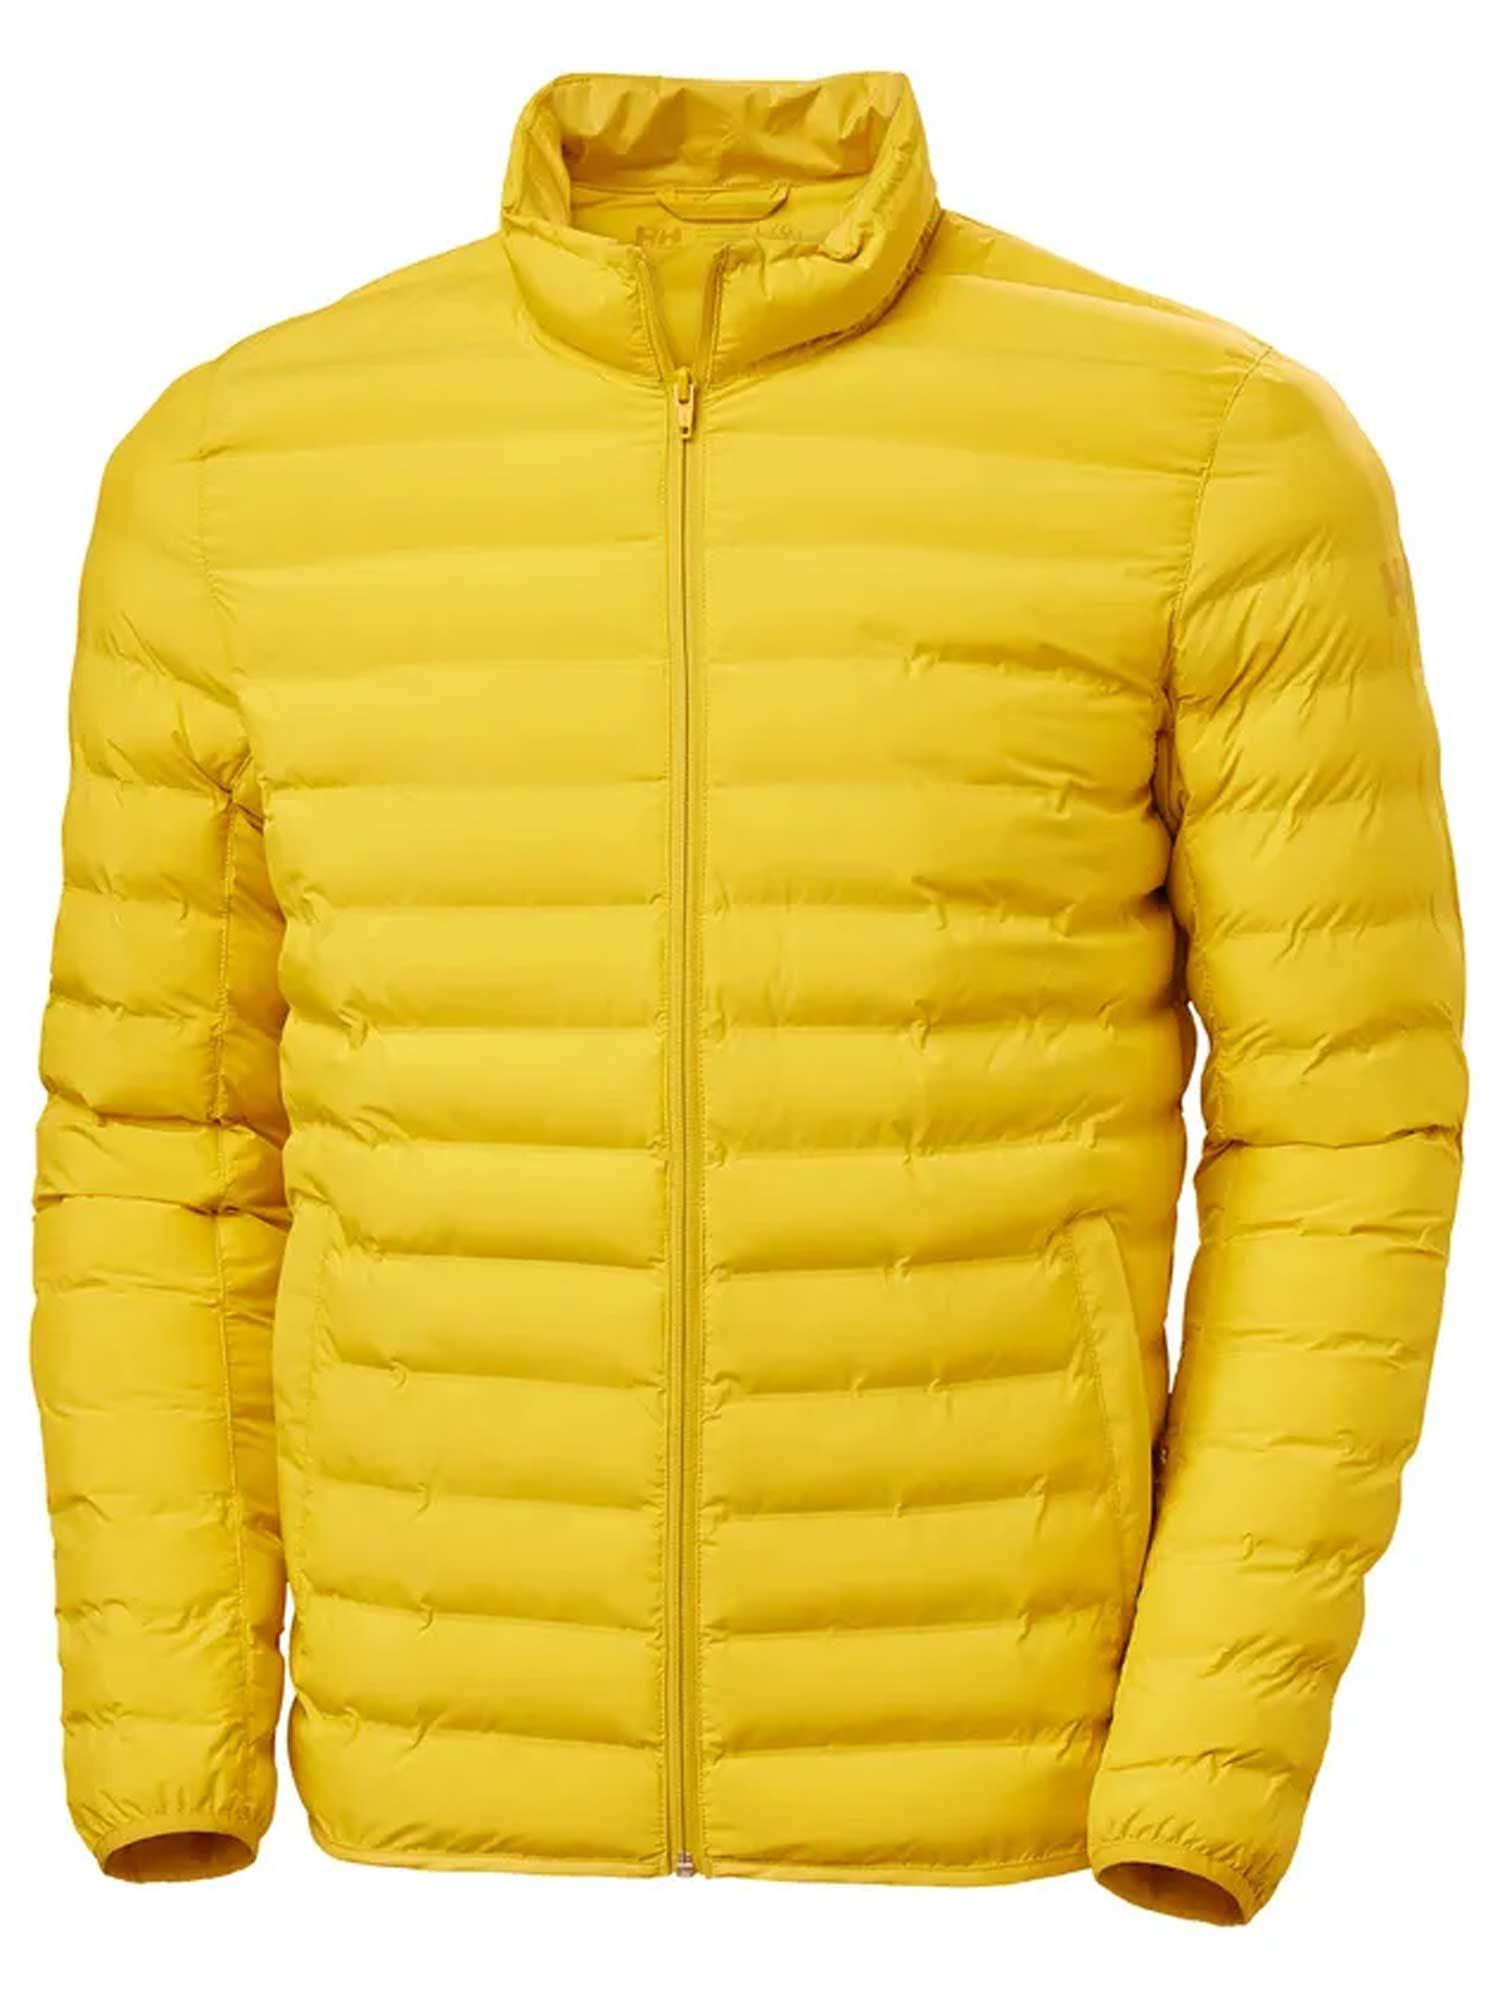 Selected image for HELLY HANSEN Muška jakna MONO MATERIAL INSULATOR Jacket žuta